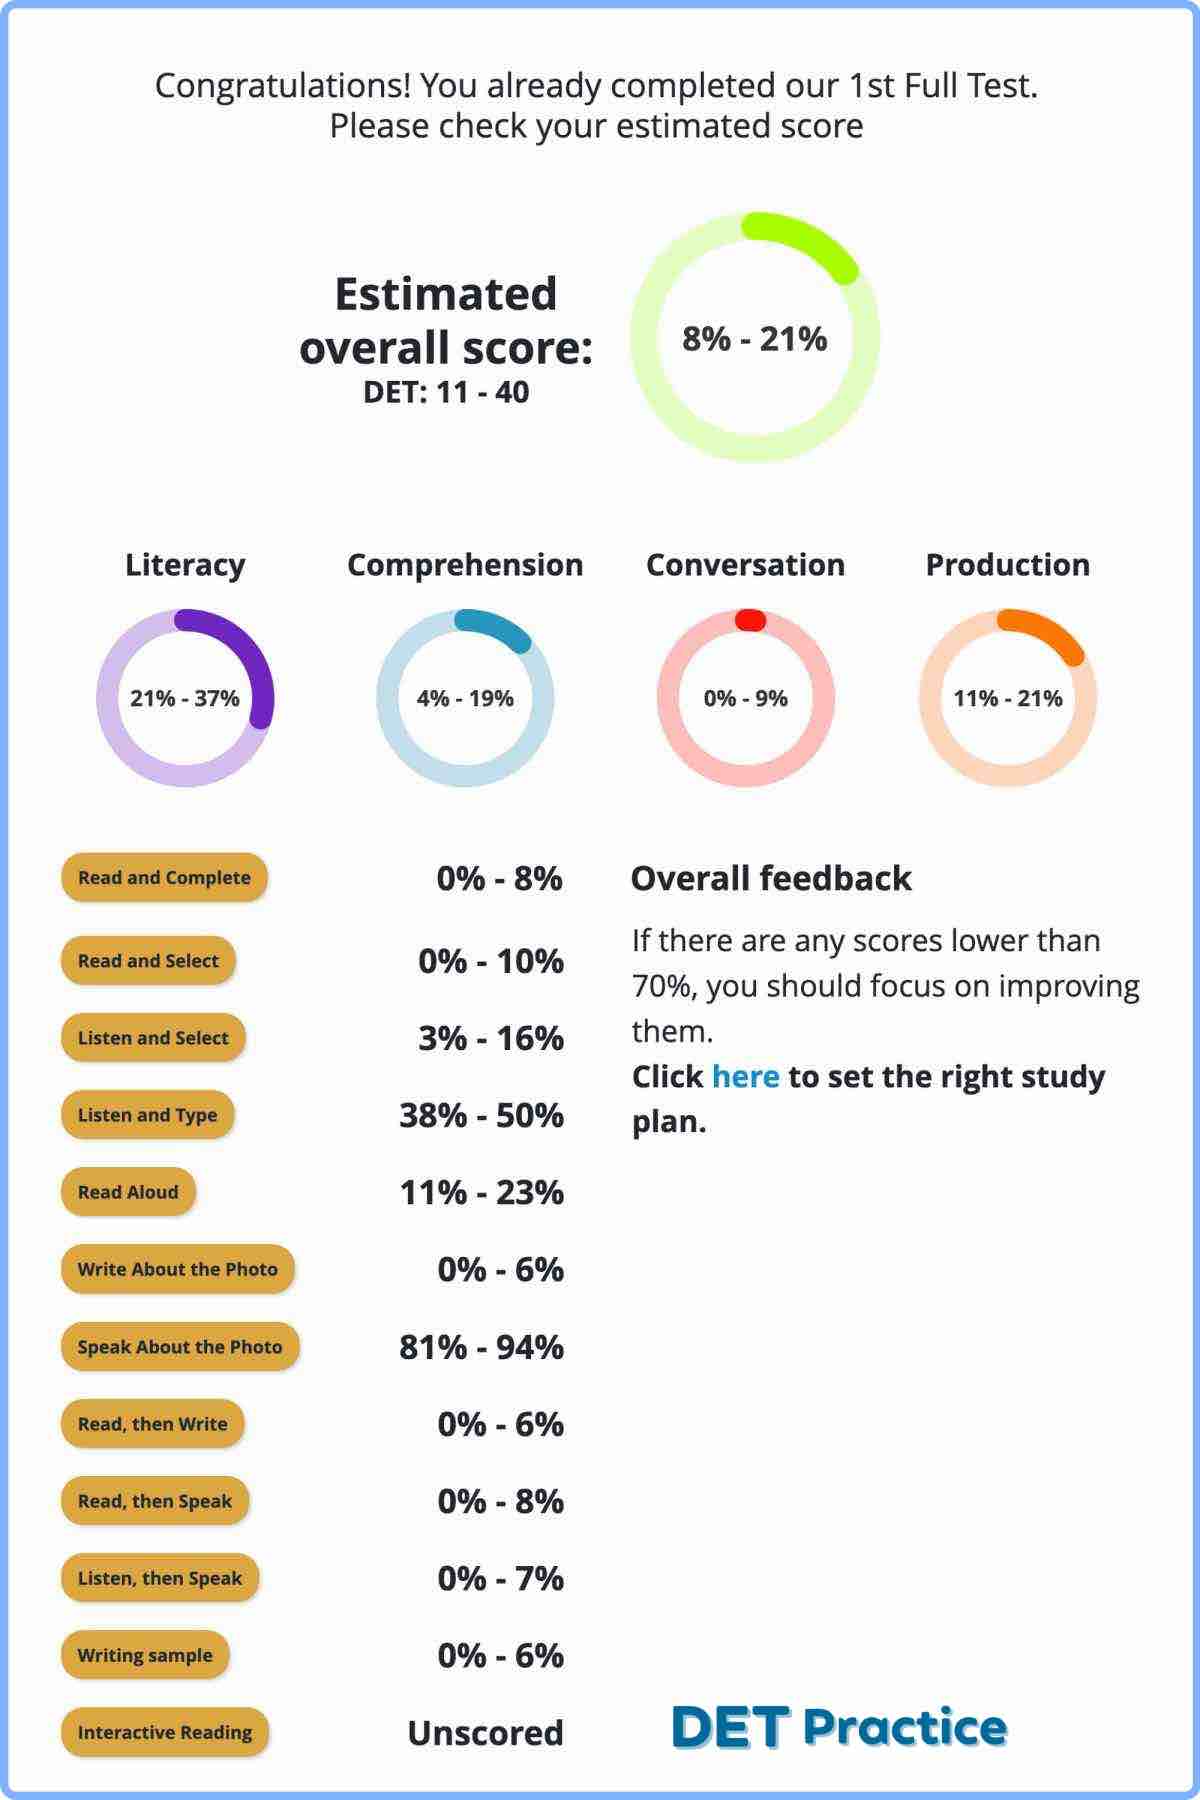 DET Ready estimated score, Duolingo English Test, DET Practice Platform, DET Ready, DET Ready Practice